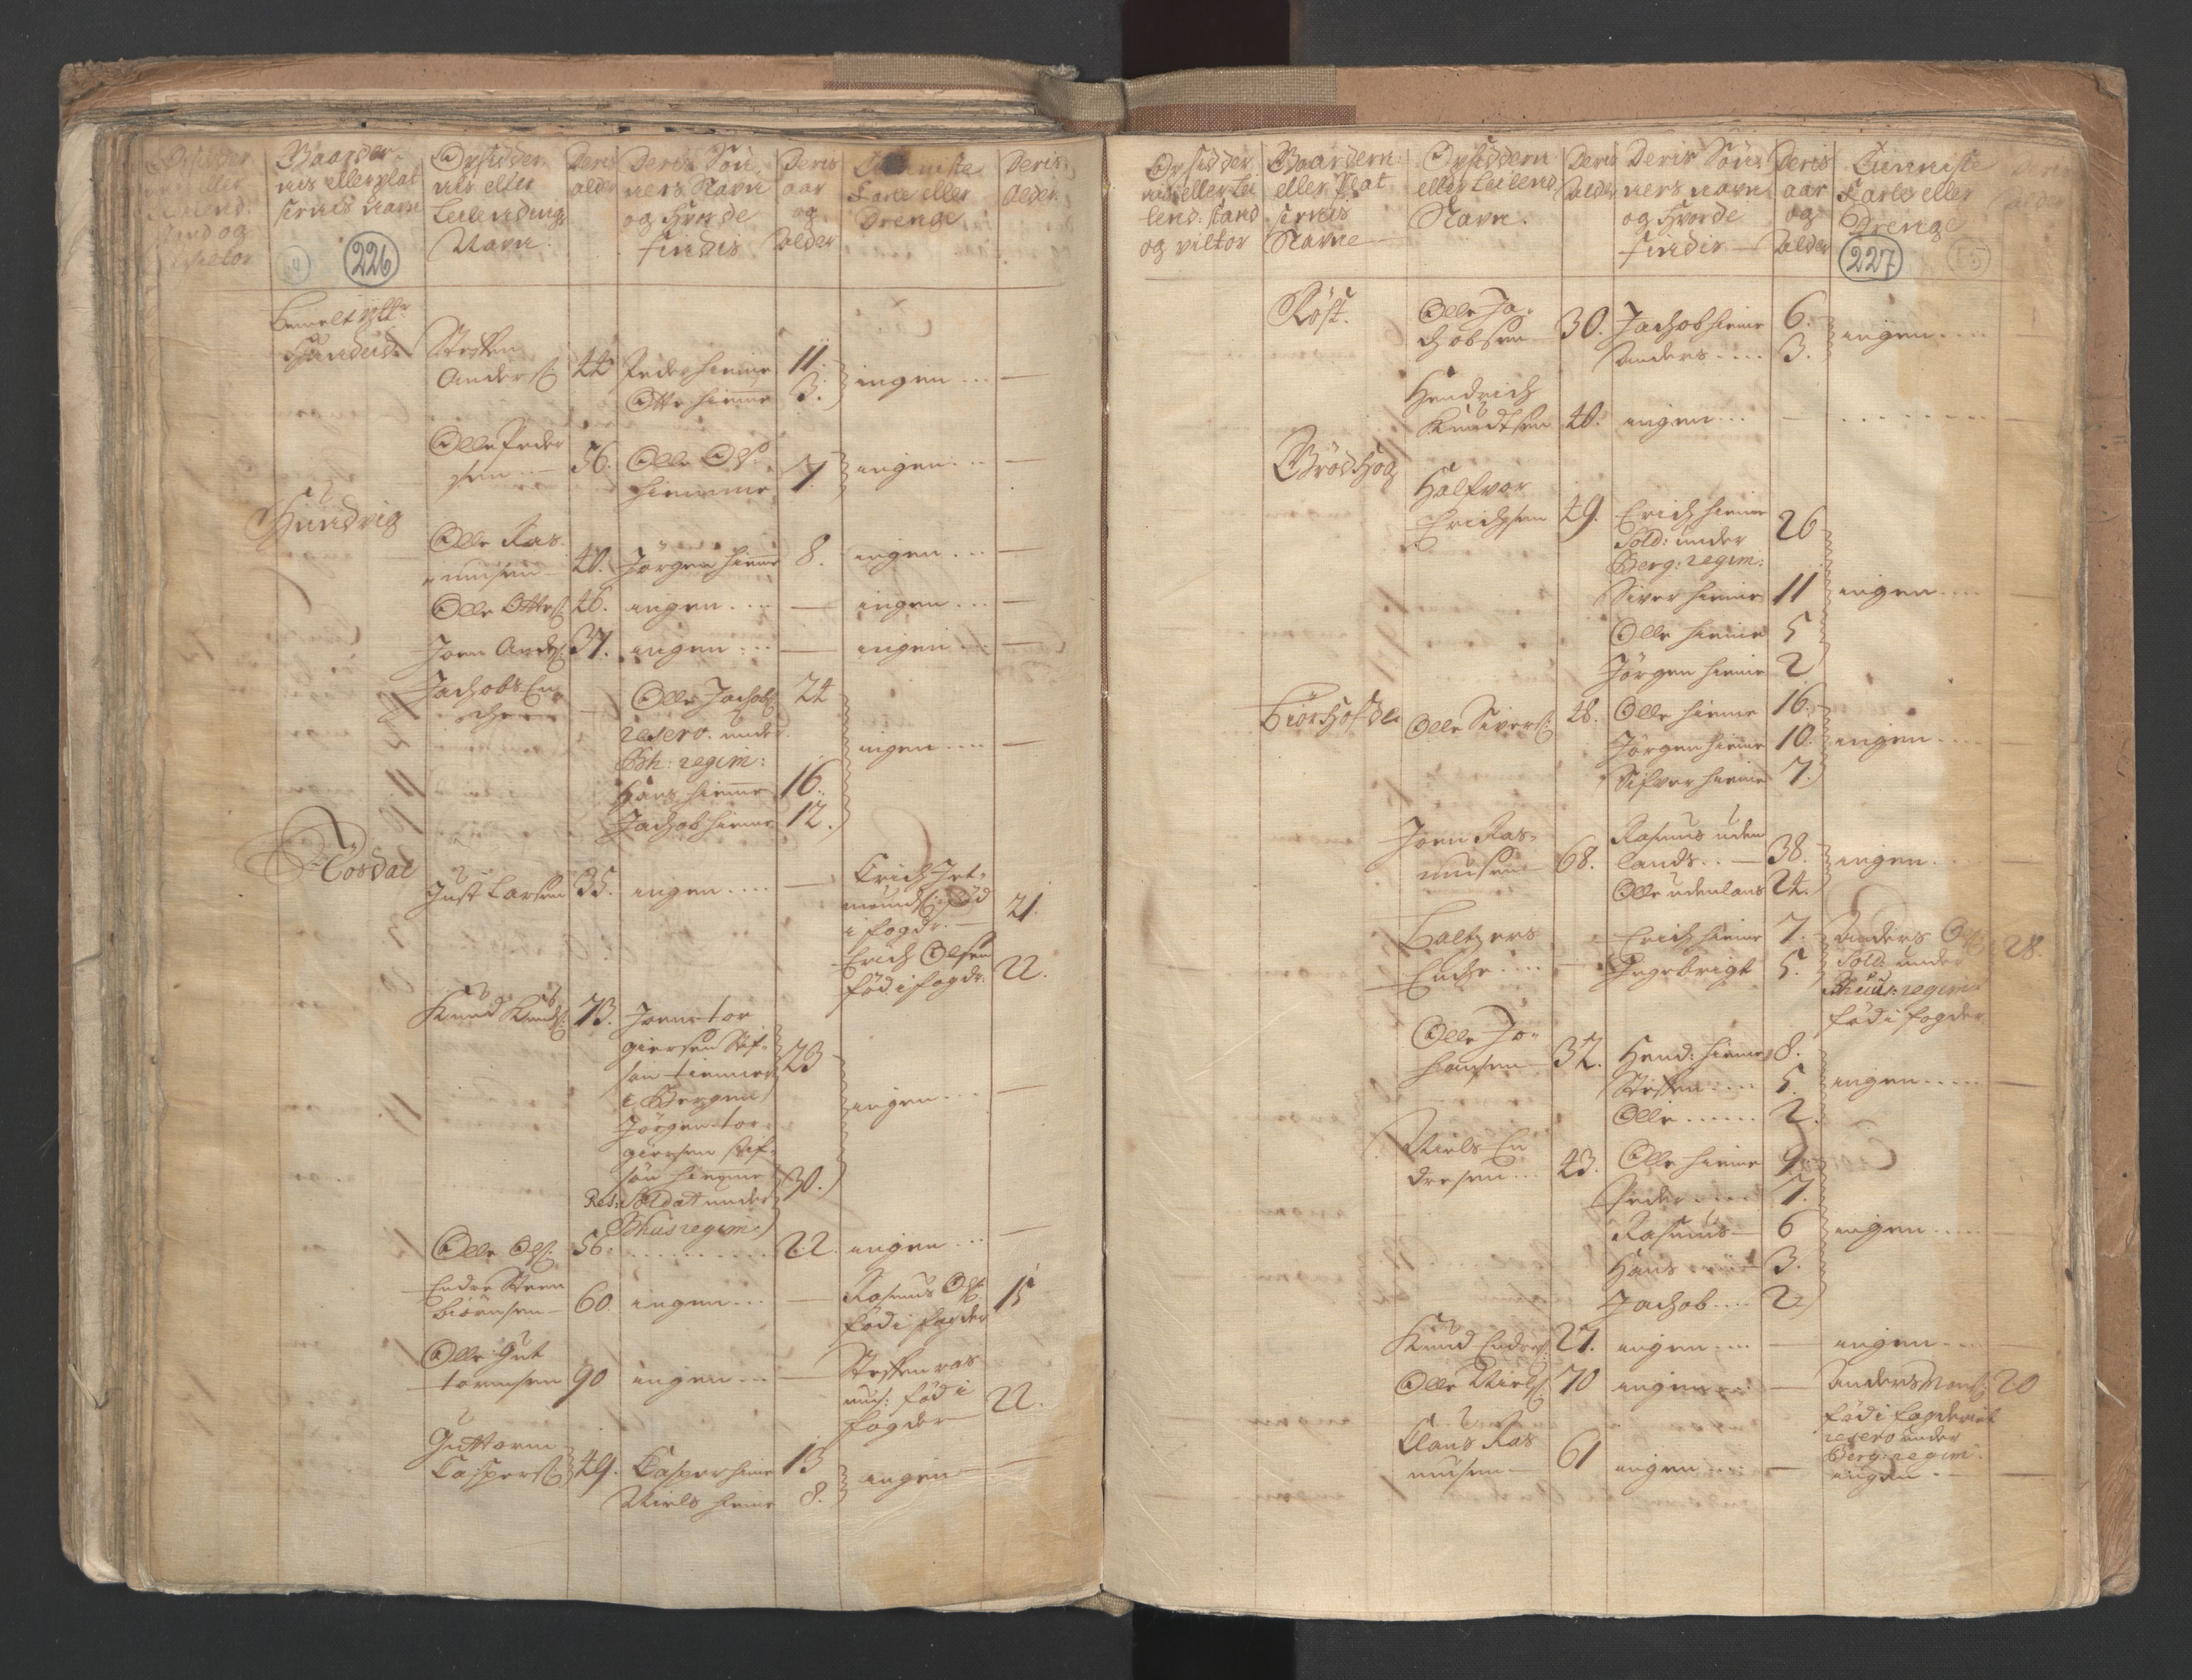 RA, Census (manntall) 1701, no. 9: Sunnfjord fogderi, Nordfjord fogderi and Svanø birk, 1701, p. 226-227